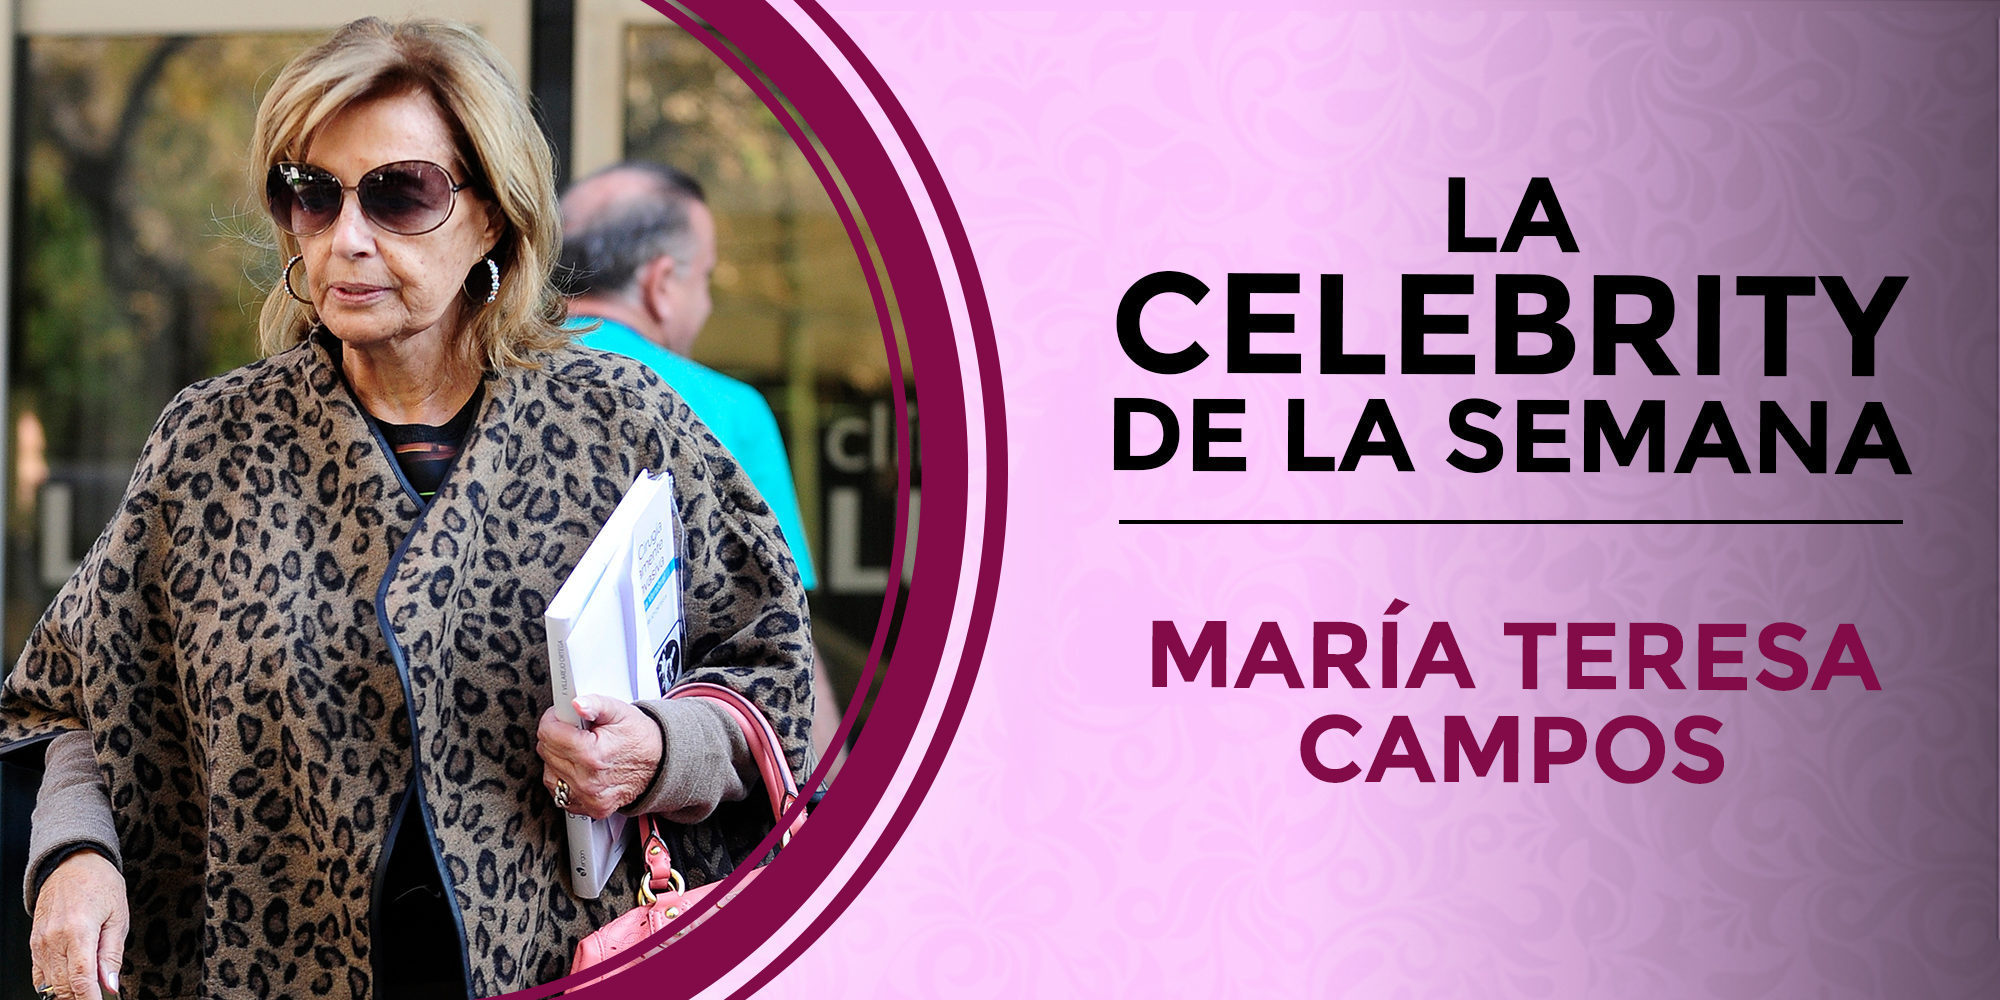 María Teresa Campos se convierte en la celebrity de la semana tras su ingreso por una isquemia cerebral